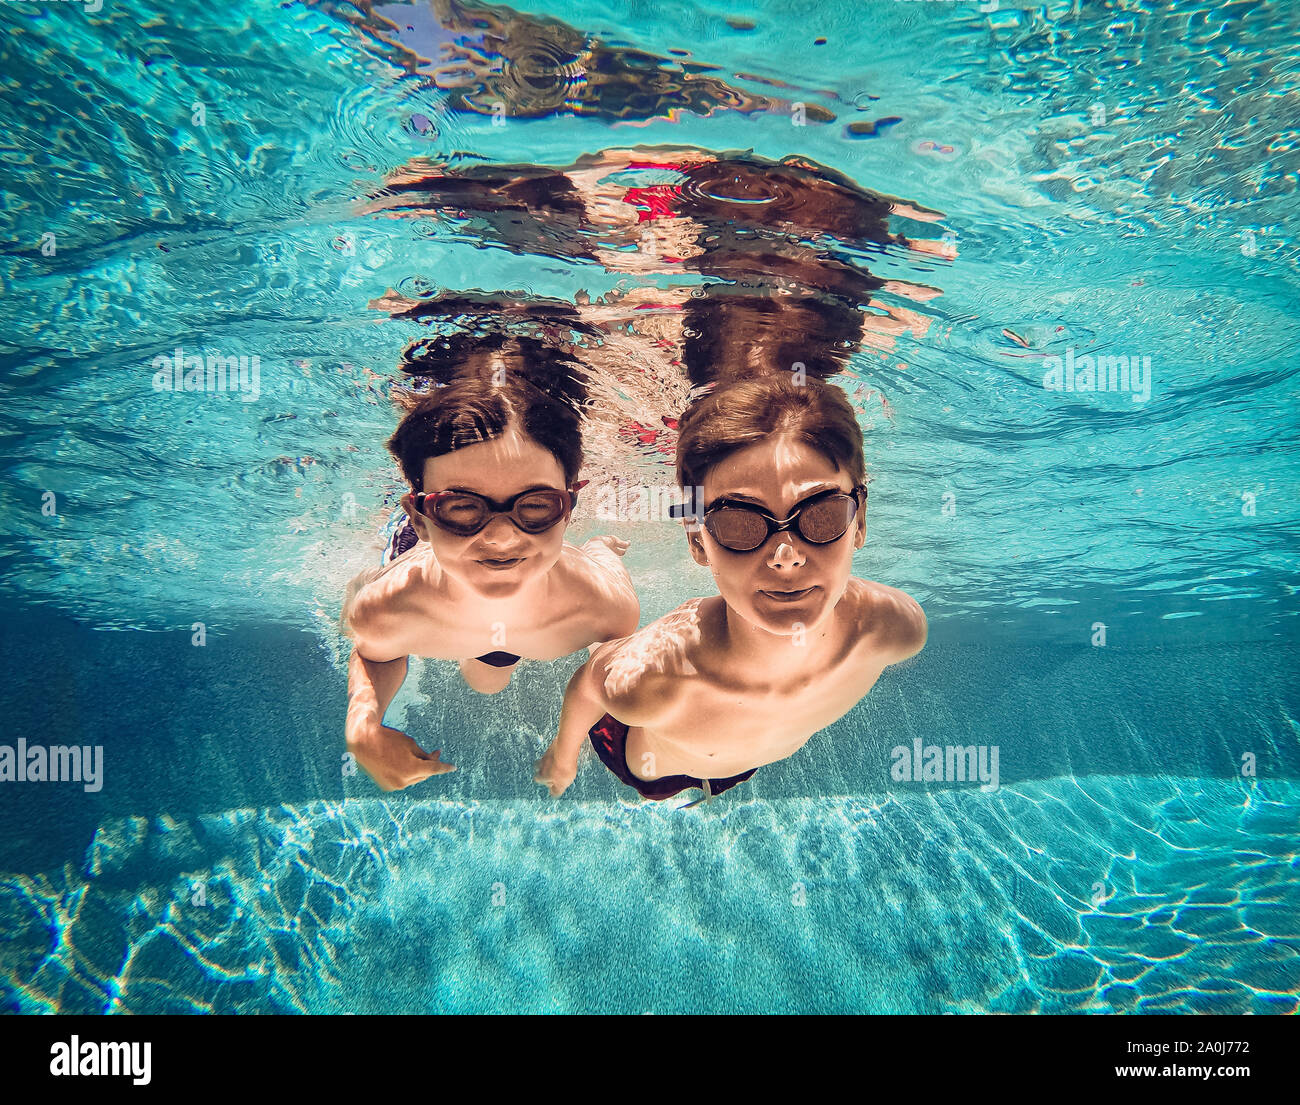 Unterwasser Bild von zwei Jungen schwimmen neben einander in einem Pool. Stockfoto